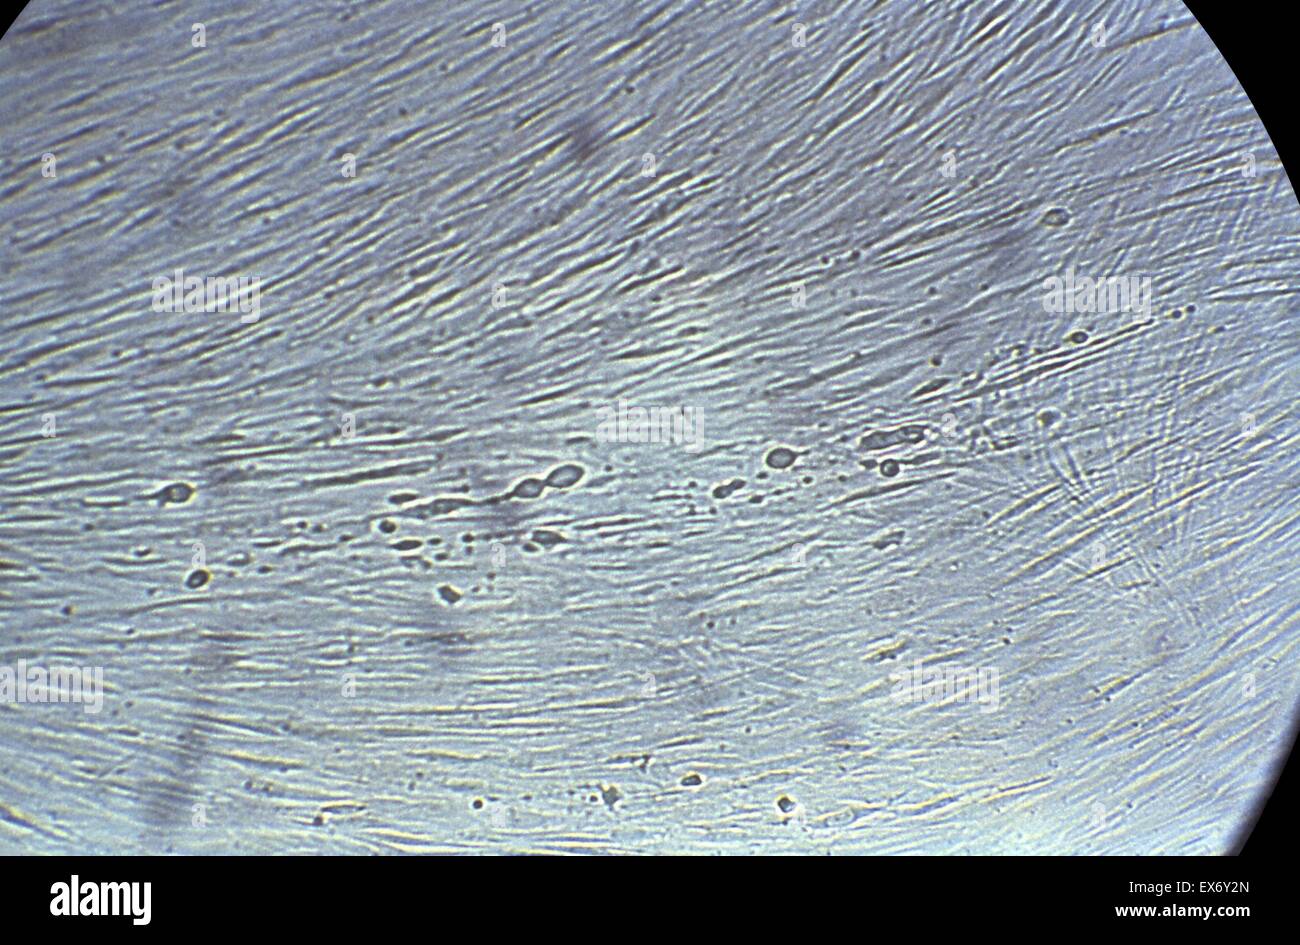 Microfotografía mostrando efectos histopatológicas del virus del herpes simple en una cultura de células de fibroblastos de pulmón embrionario humano. Esto se denomina una etapa temprana de la infección. El herpes genital es una enfermedad de transmisión sexual (ETS) causada por el herpes simpl Foto de stock